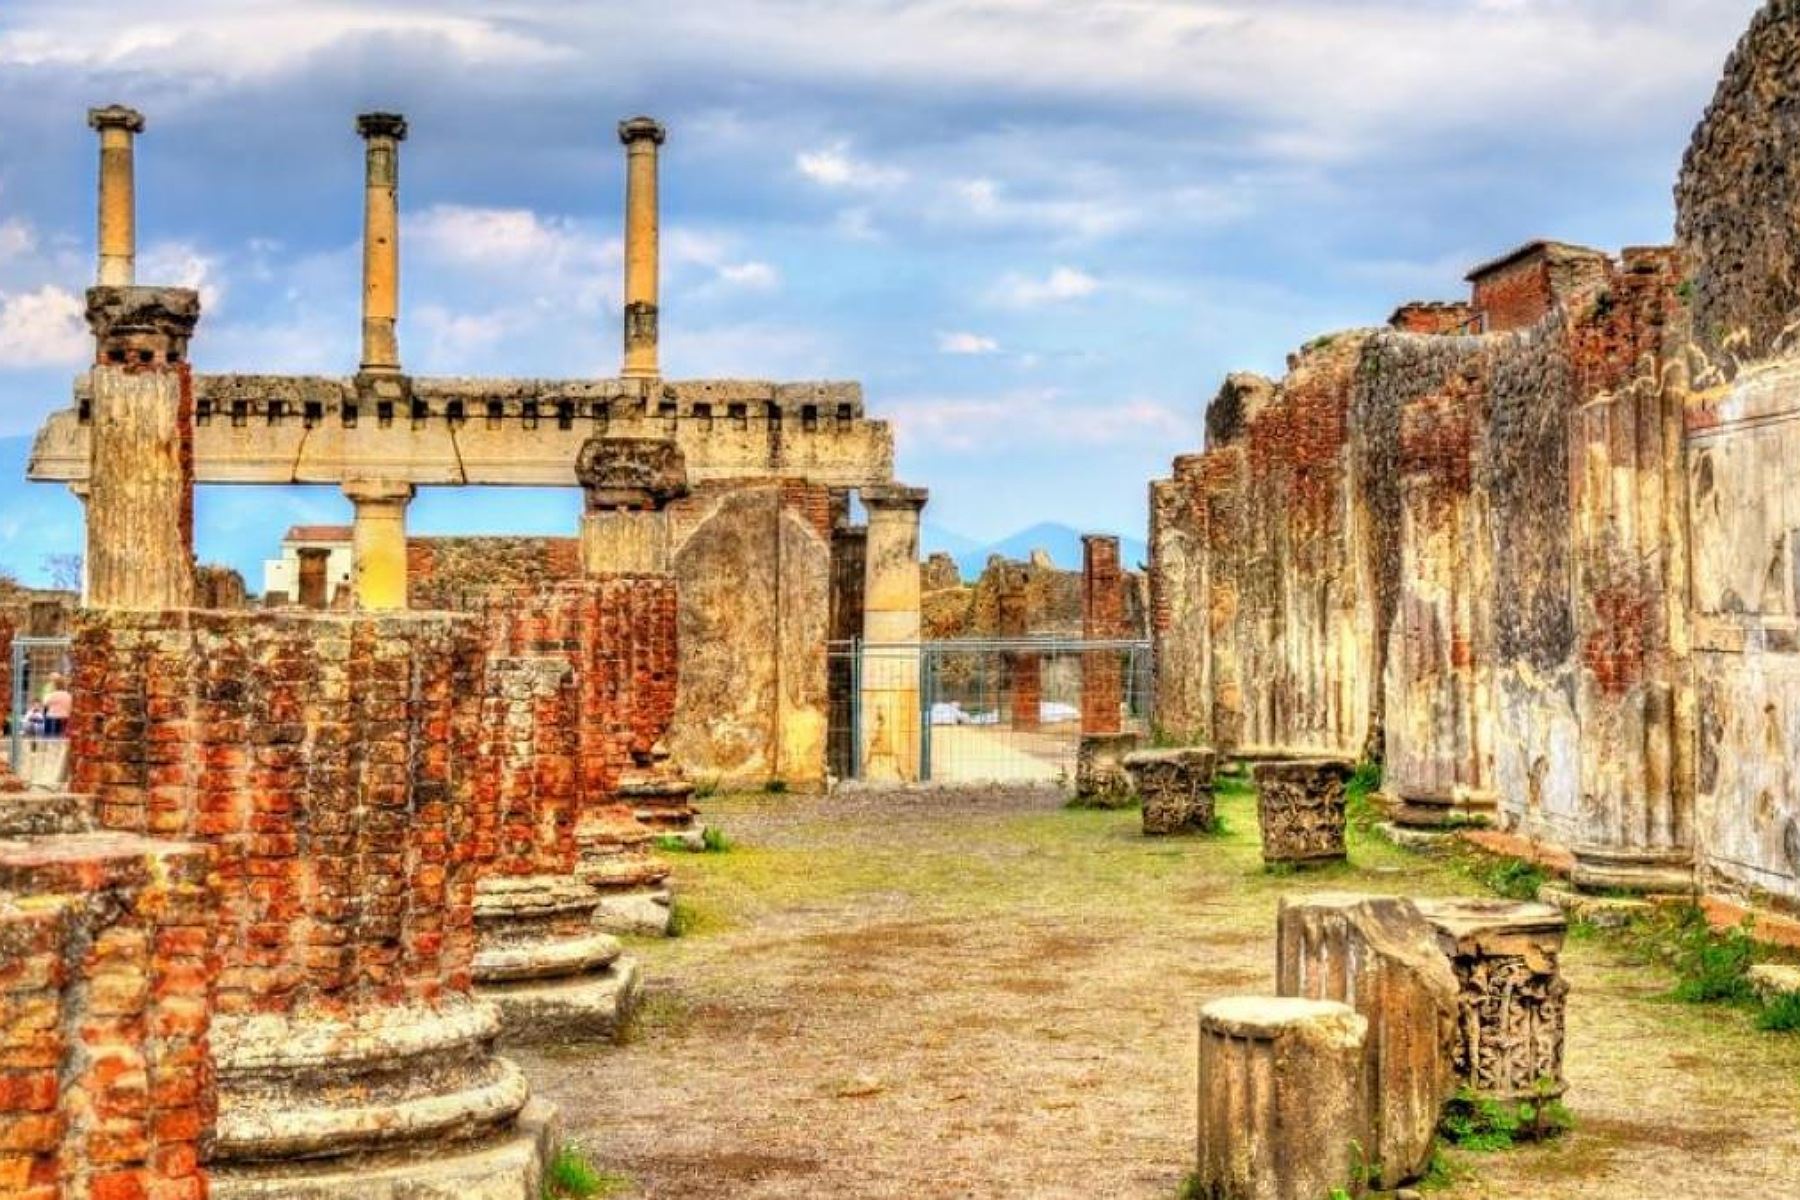 Parque Arqueológico Pompeya abre al público siete casas hasta ahora inaccesibles. Foto: Internet/medios